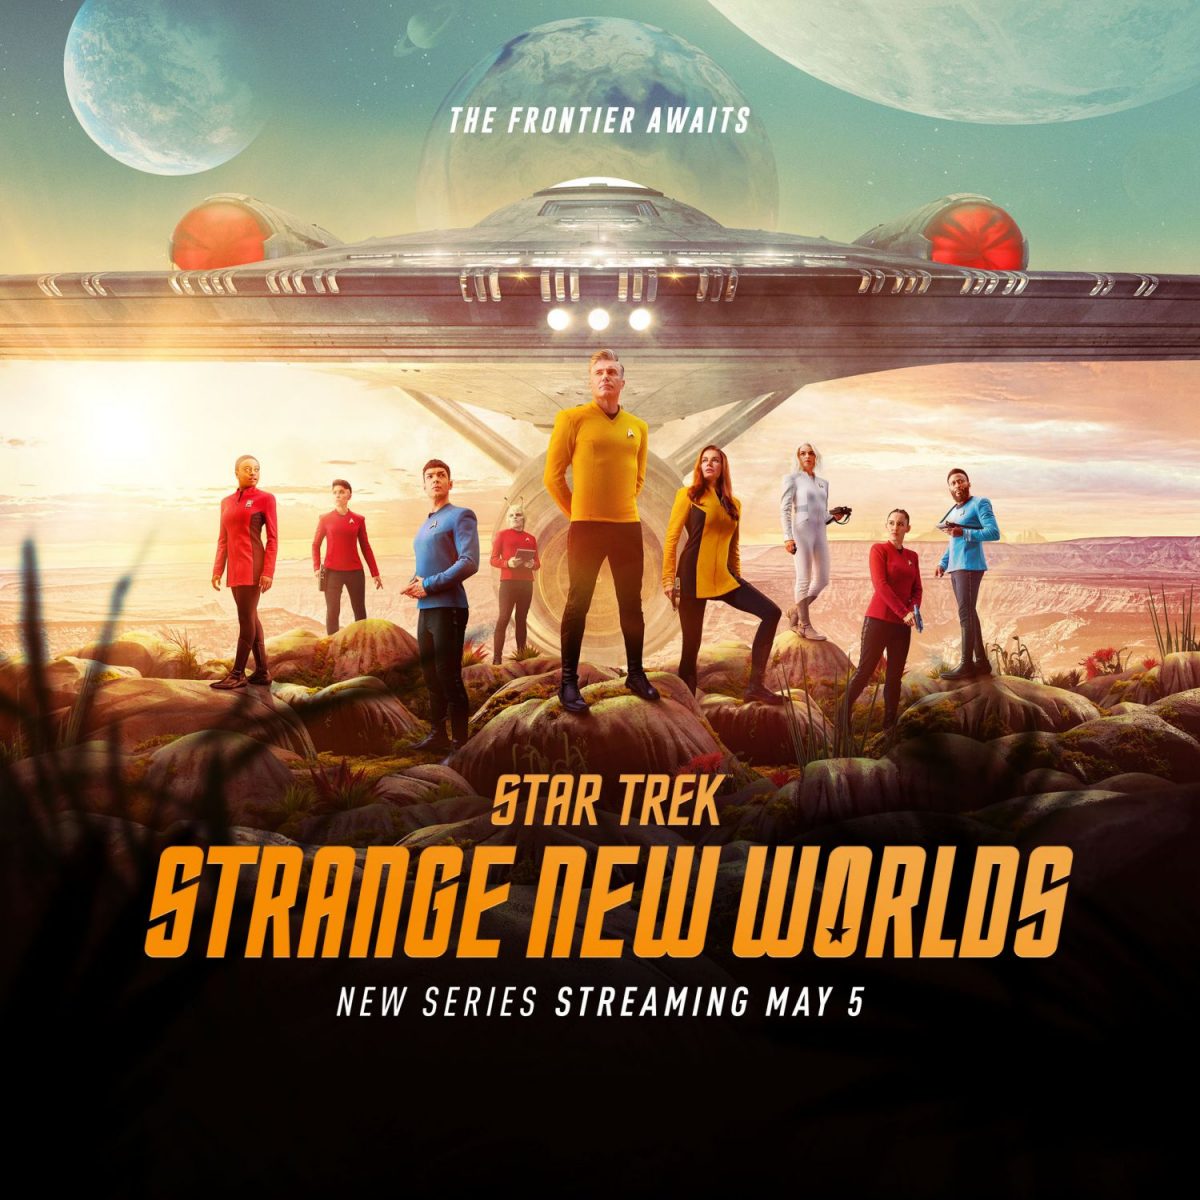 star trek: strange new worlds